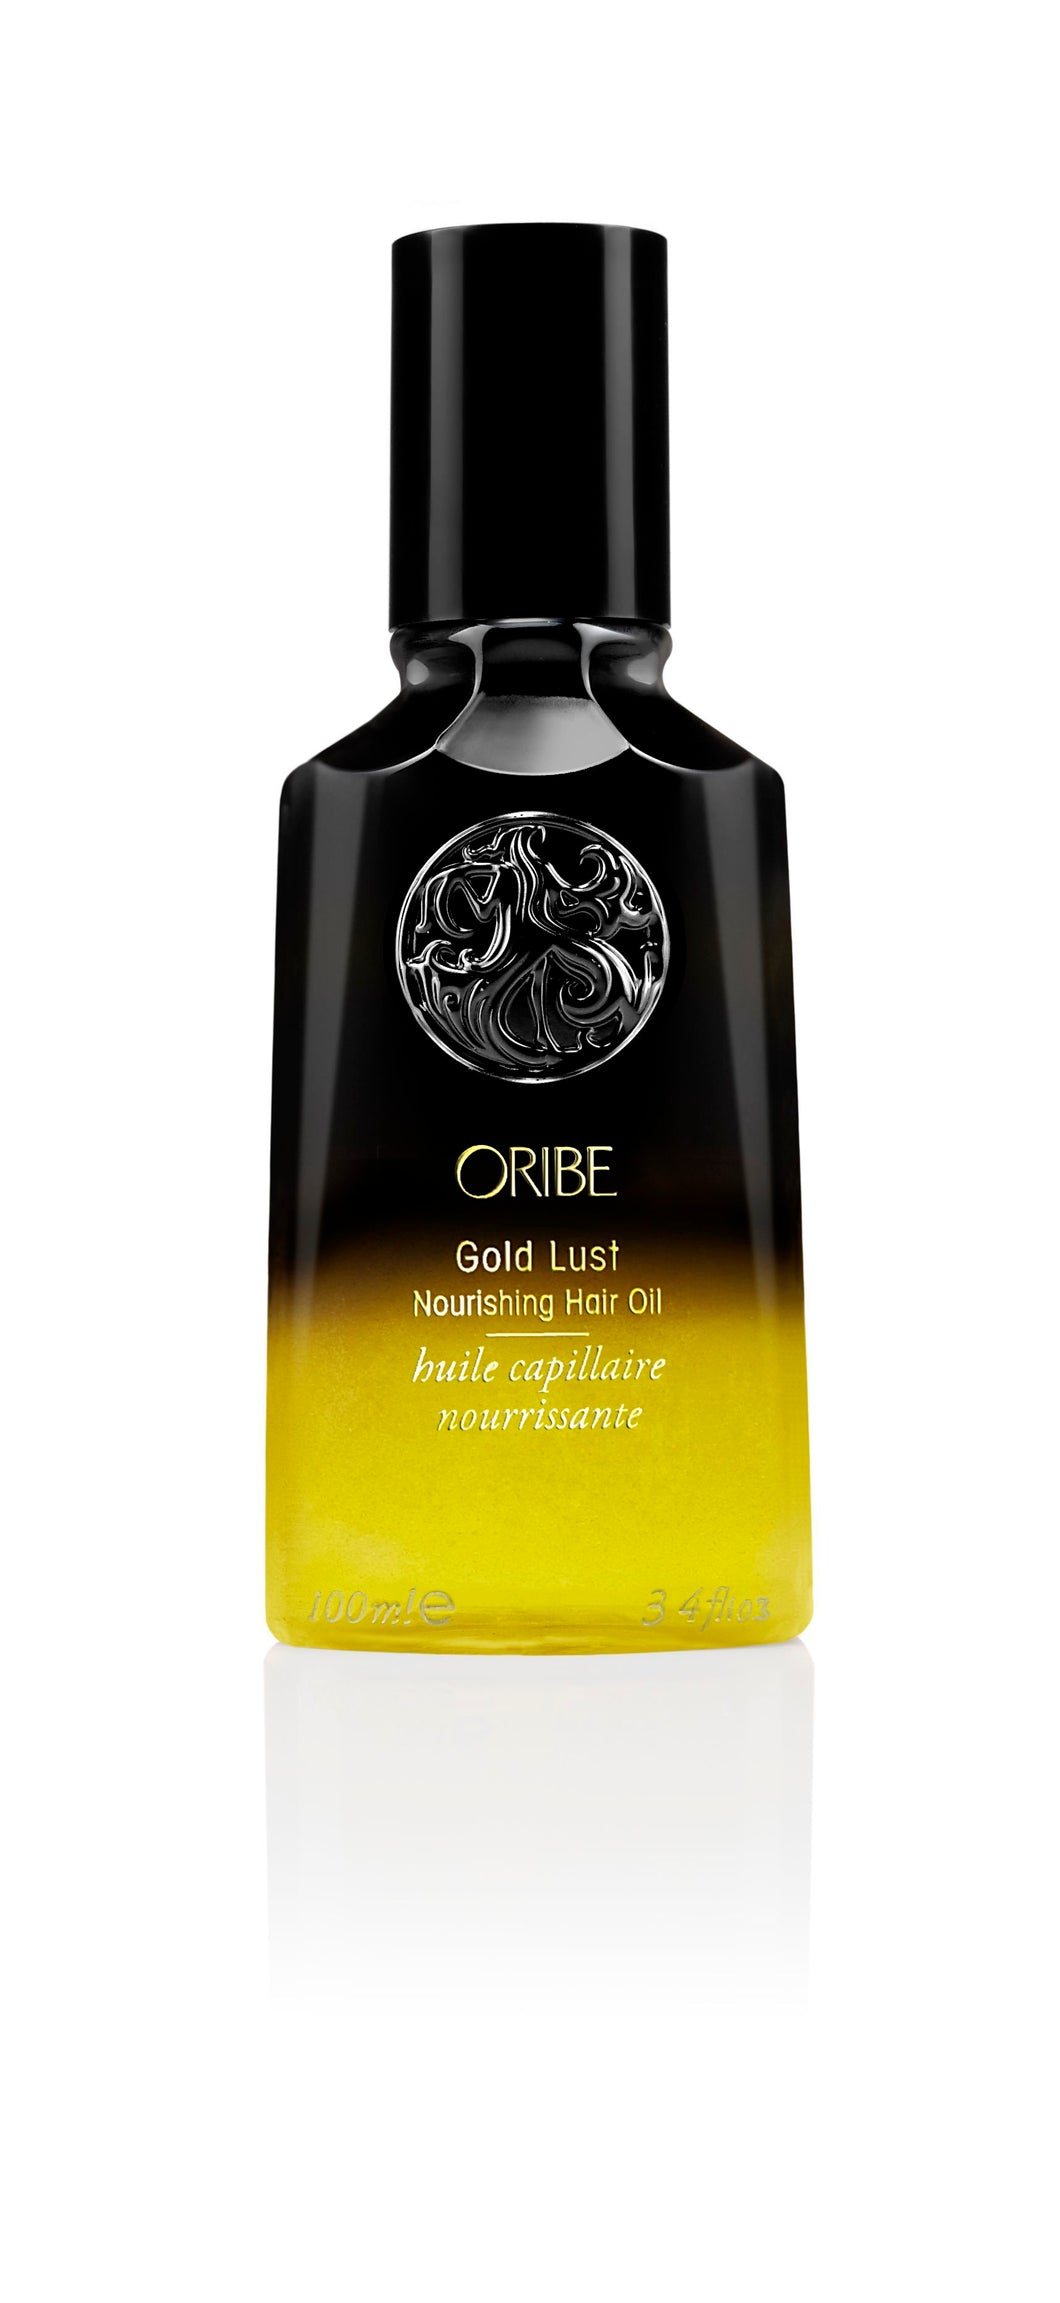 Gold Lust Nourishing Hair Oil, 3.4 OZ.